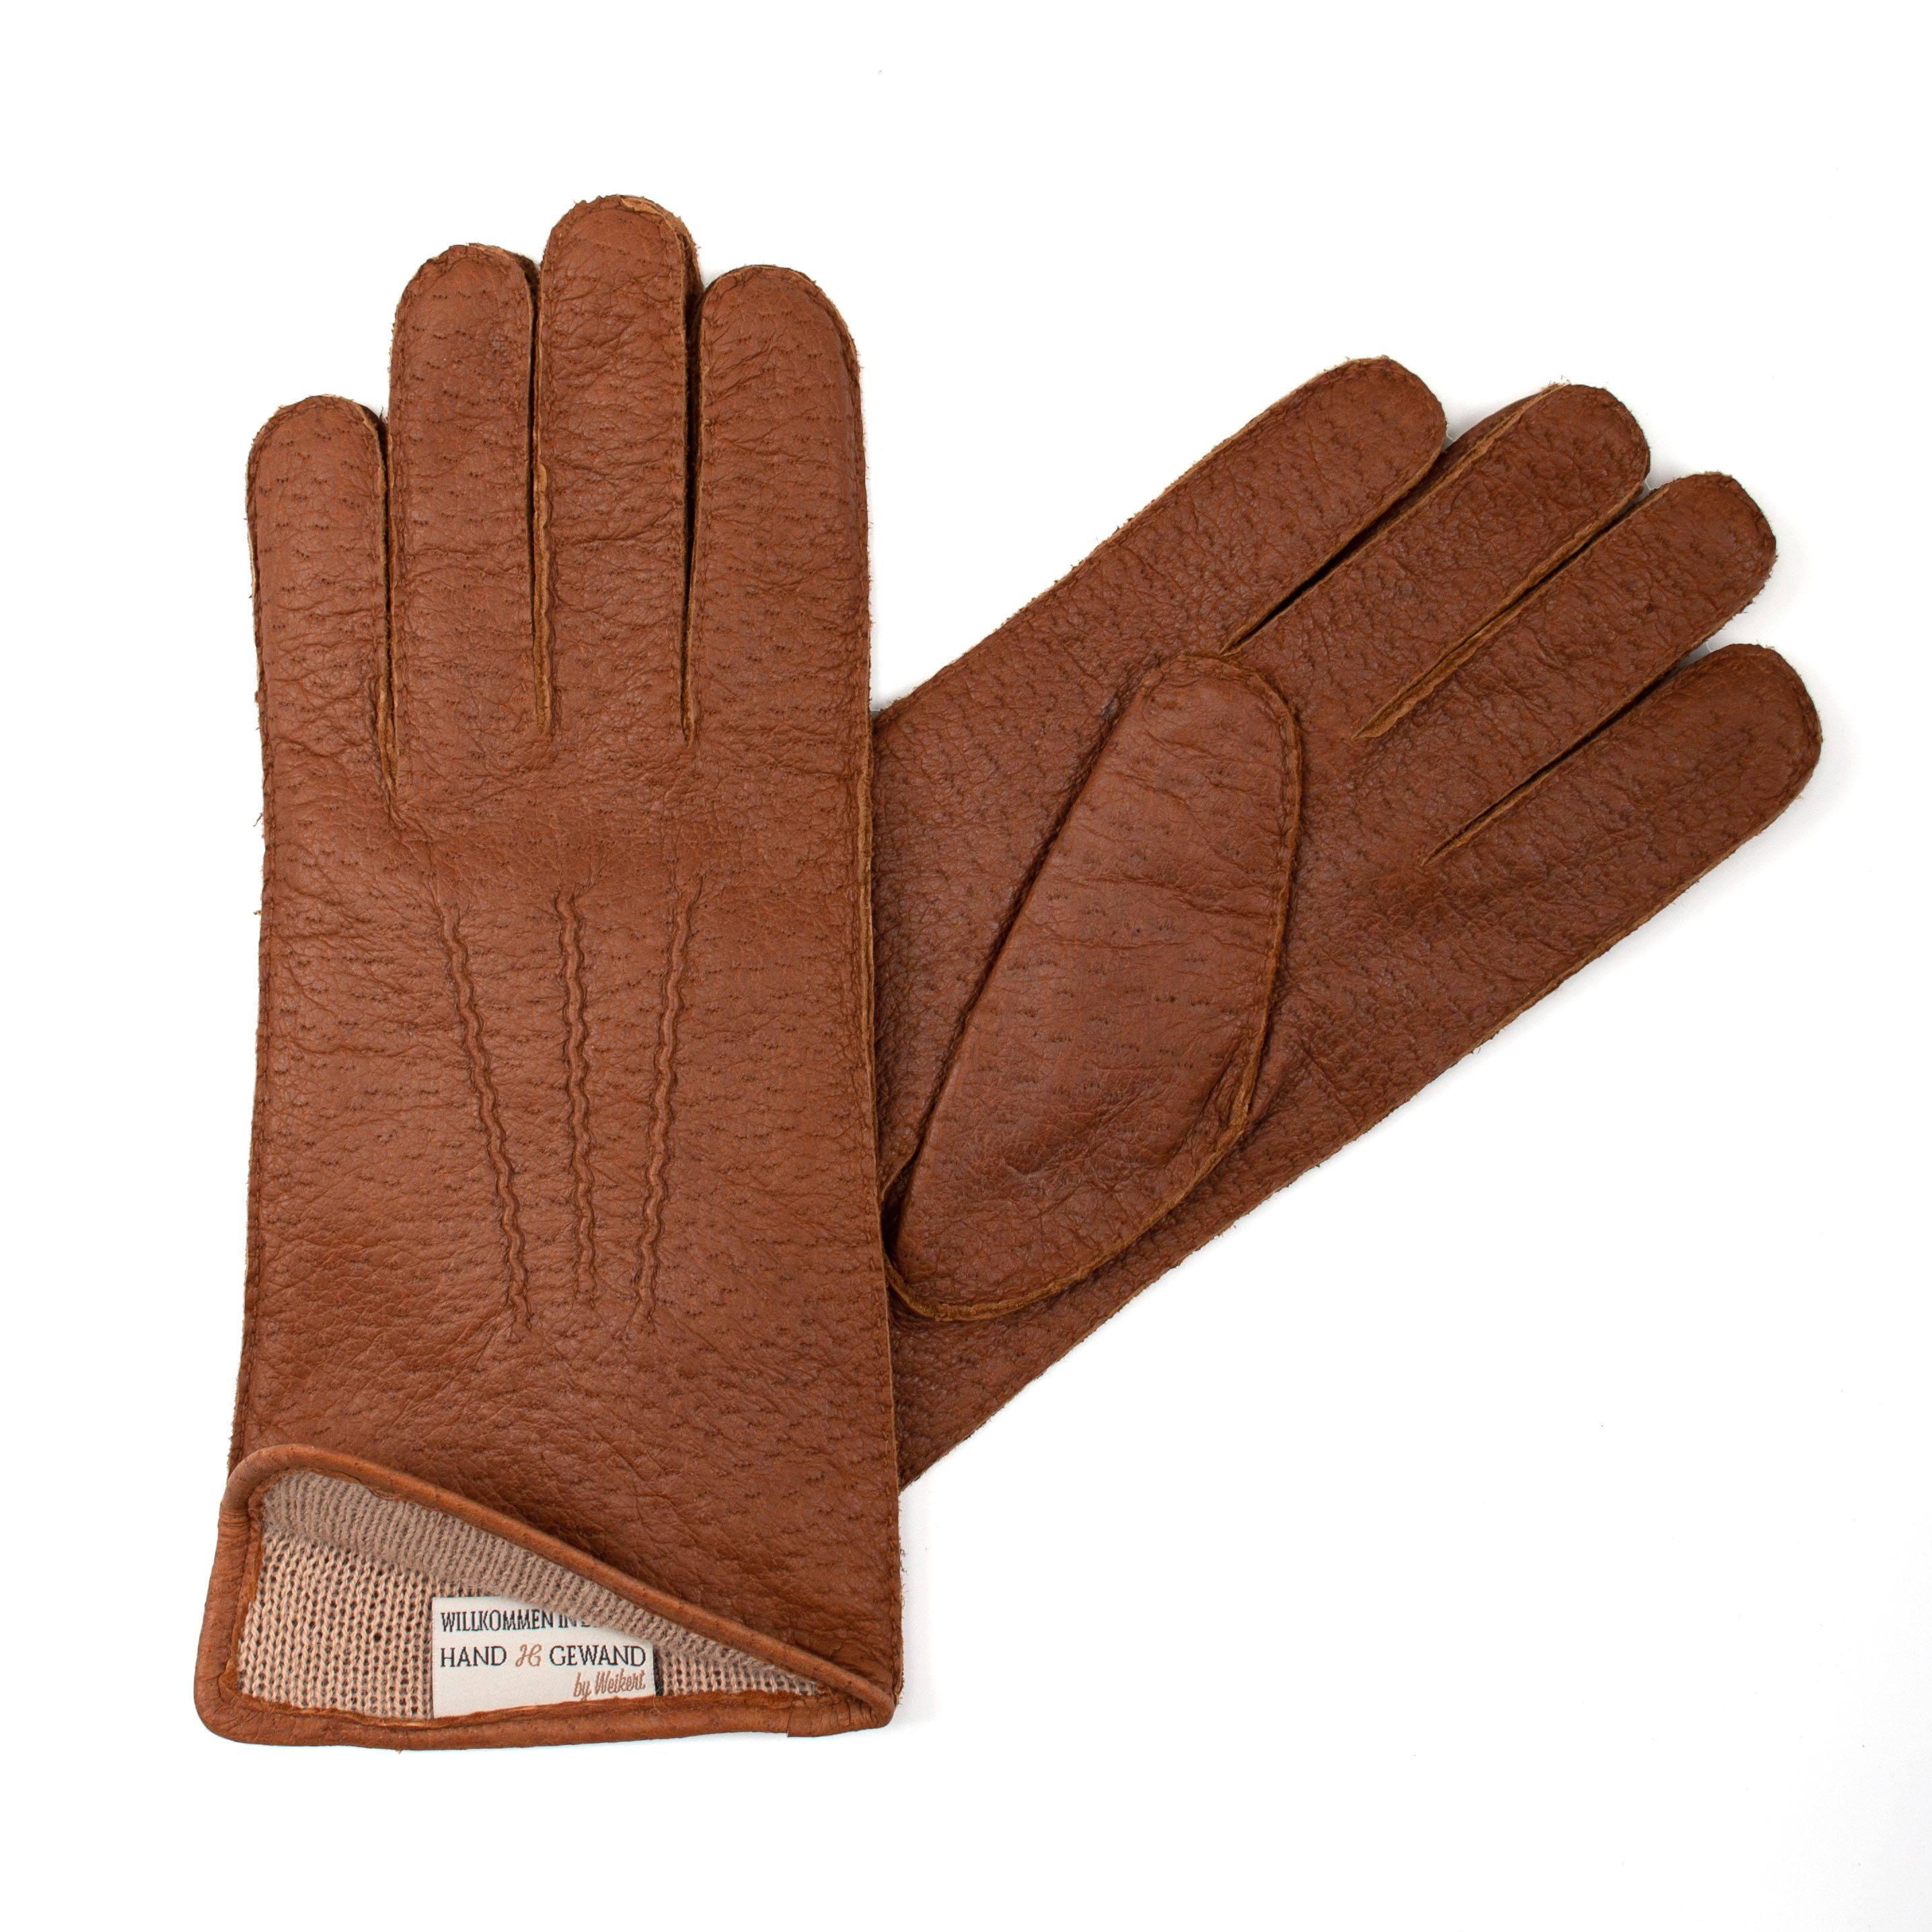 Hand Gewand by Weikert Lederhandschuhe SIR HELMUT- Peccary Lederhandschuhe mit Alpaka gefüttert Mittelbraun | Handschuhe